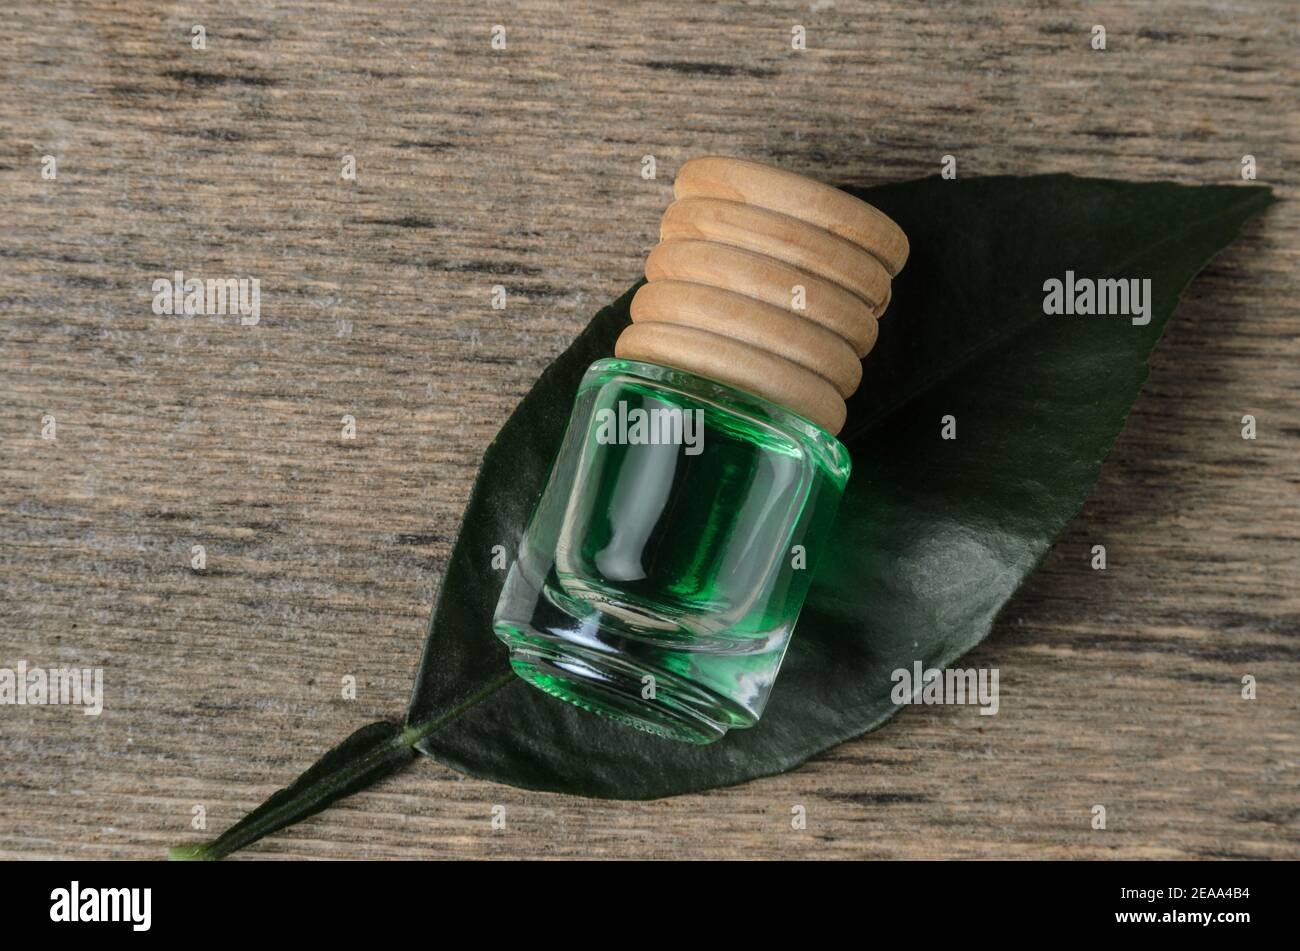 Zitronengeschmack von smaragdgrüner Farbe in einer Glasflasche mit einem Holzstopfen auf einem grünen Blatt. Die dunkle Taste. Stockfoto